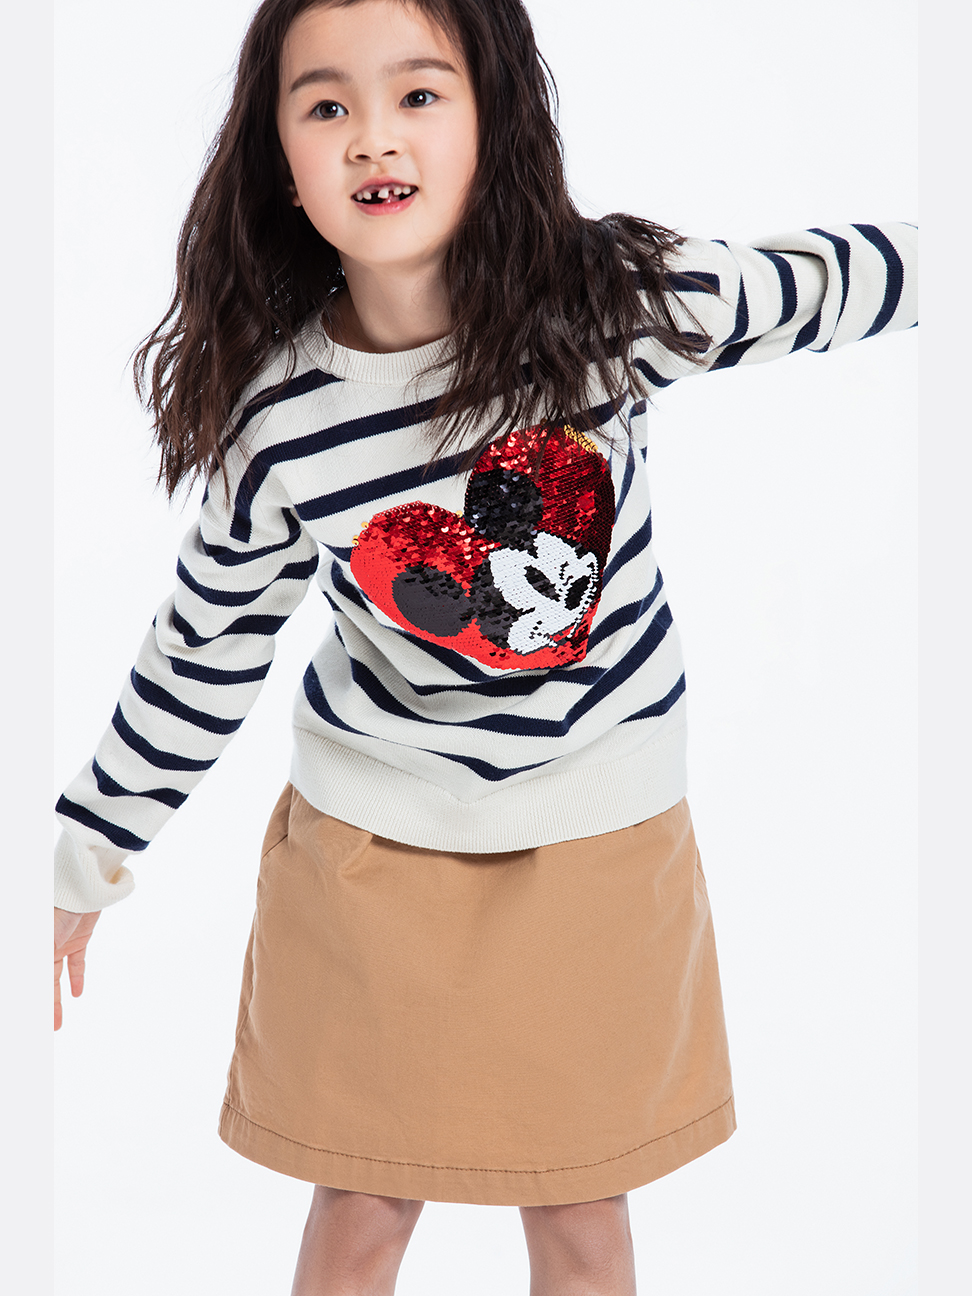 女童裝|Gap x Disney迪士尼聯名 米奇織紋針織衫-海軍藍條紋